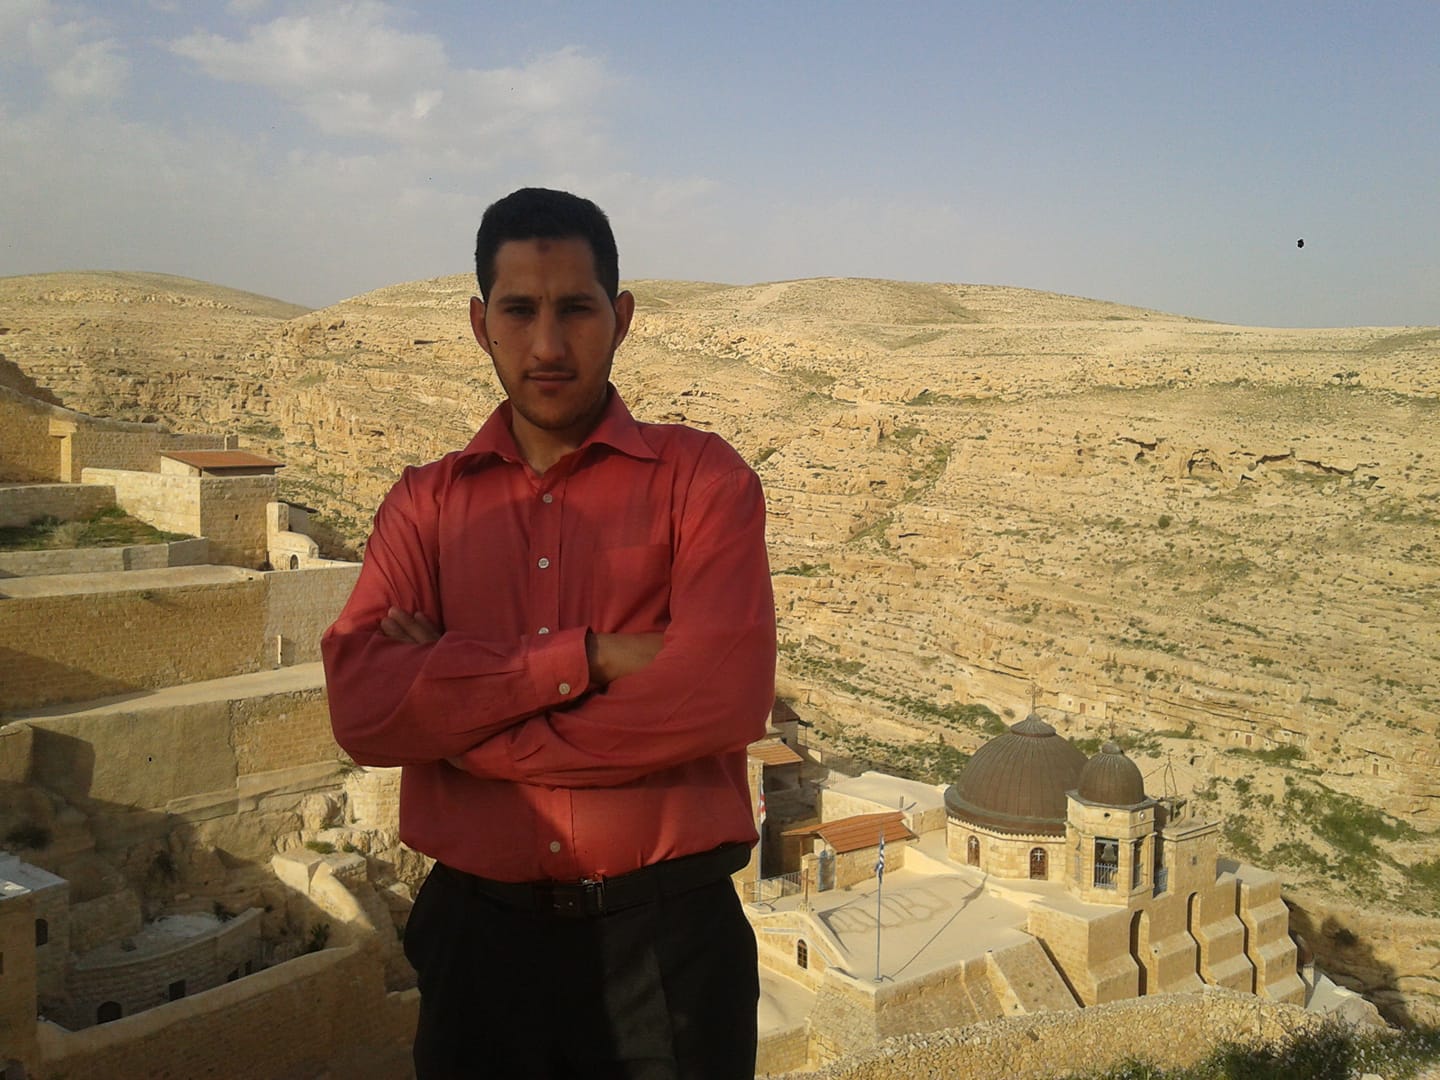 الأسير ذياب كراجة كان طالبًا في جامعة القدس، ولديه طفلان، أحدهما ولد من نطفة مهرّبة